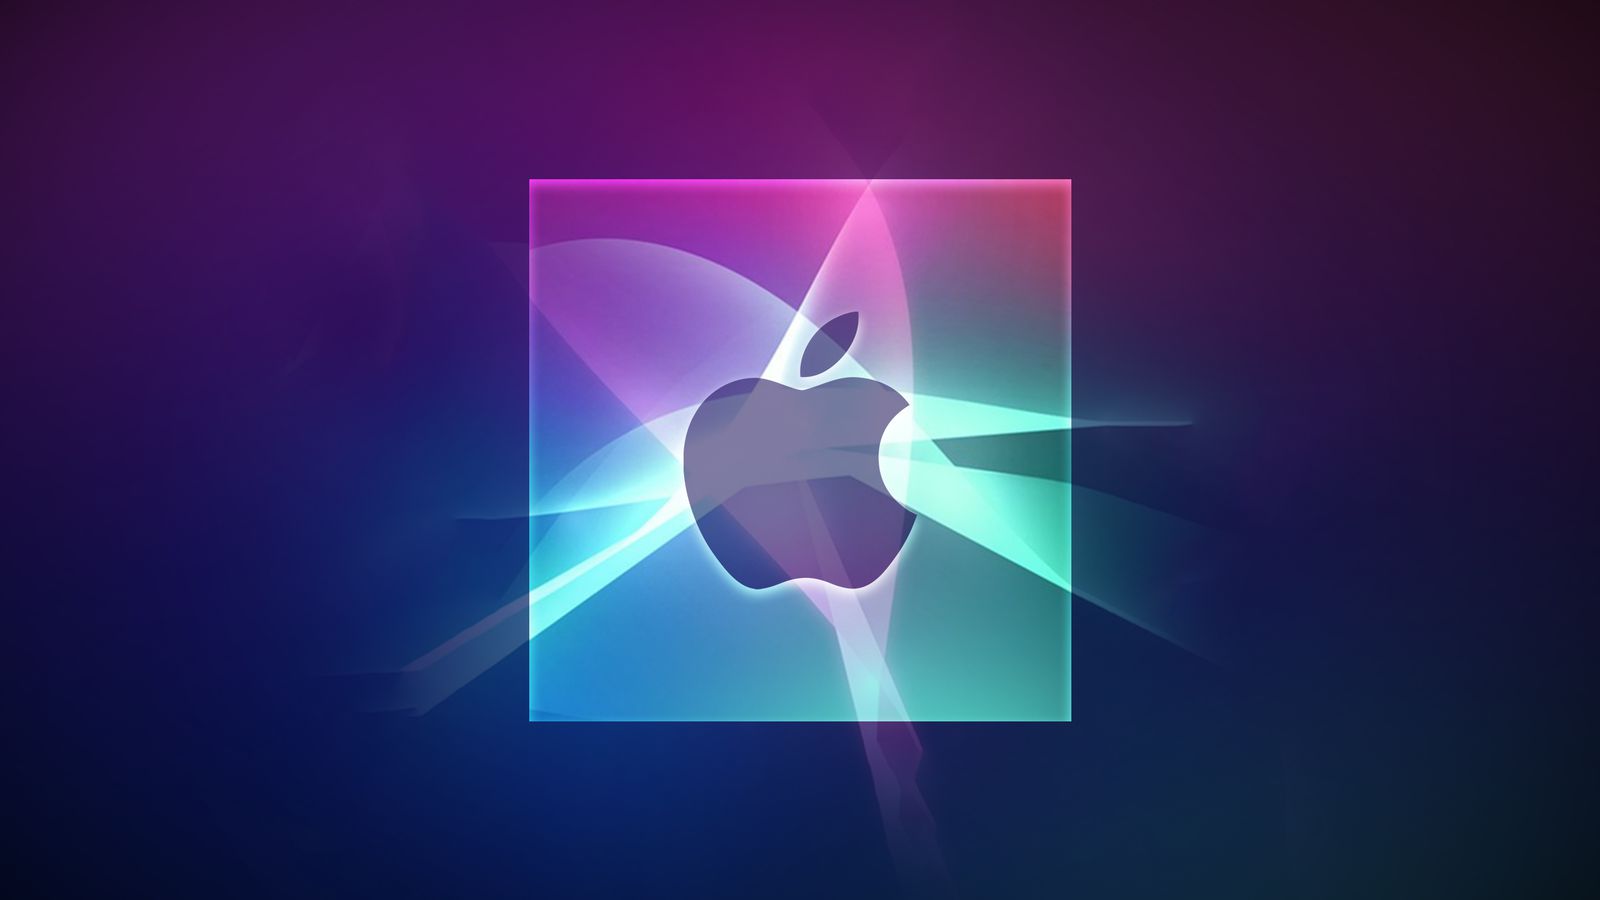 De iPhoneIslam.com, el logotipo de Apple sobre un fondo degradado de tonos morados y azules, realzado con efectos de luces y sombras, destacado en Fringe News de esta semana